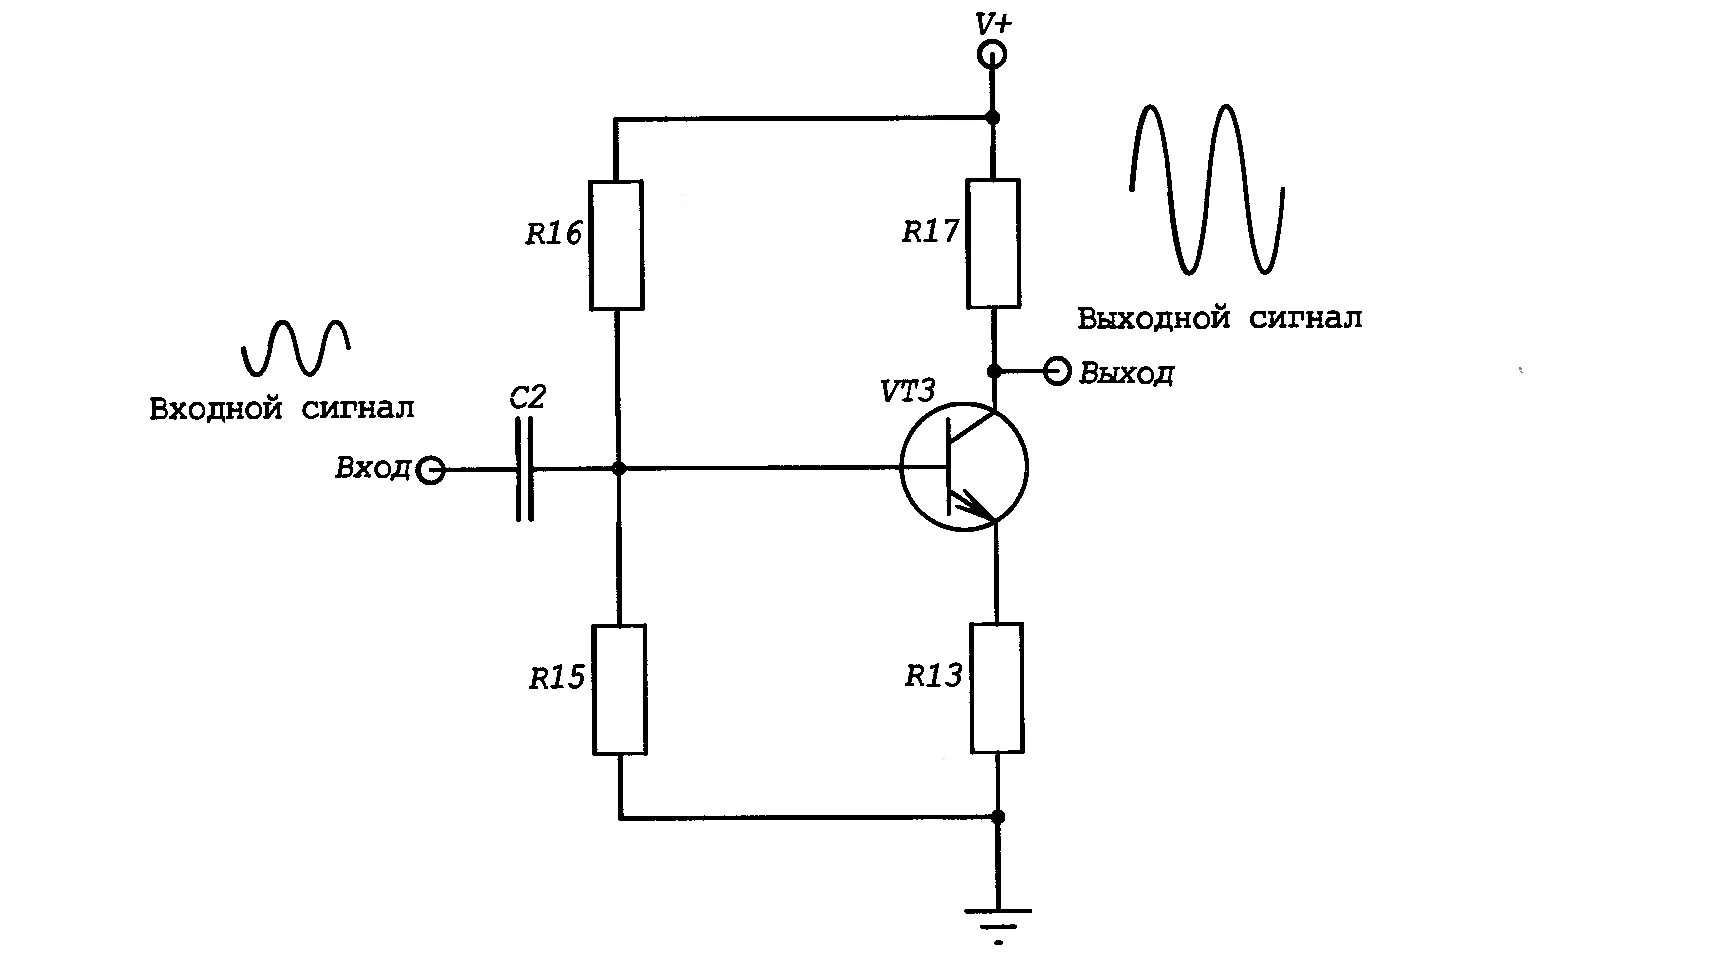 Электронный сигнал звук. Транзисторный усилитель сигнала схема. Схема усилителя входного сигнала. Схема усилителя напряжения постоянного тока на транзисторах. Усиление сигнала транзистором.